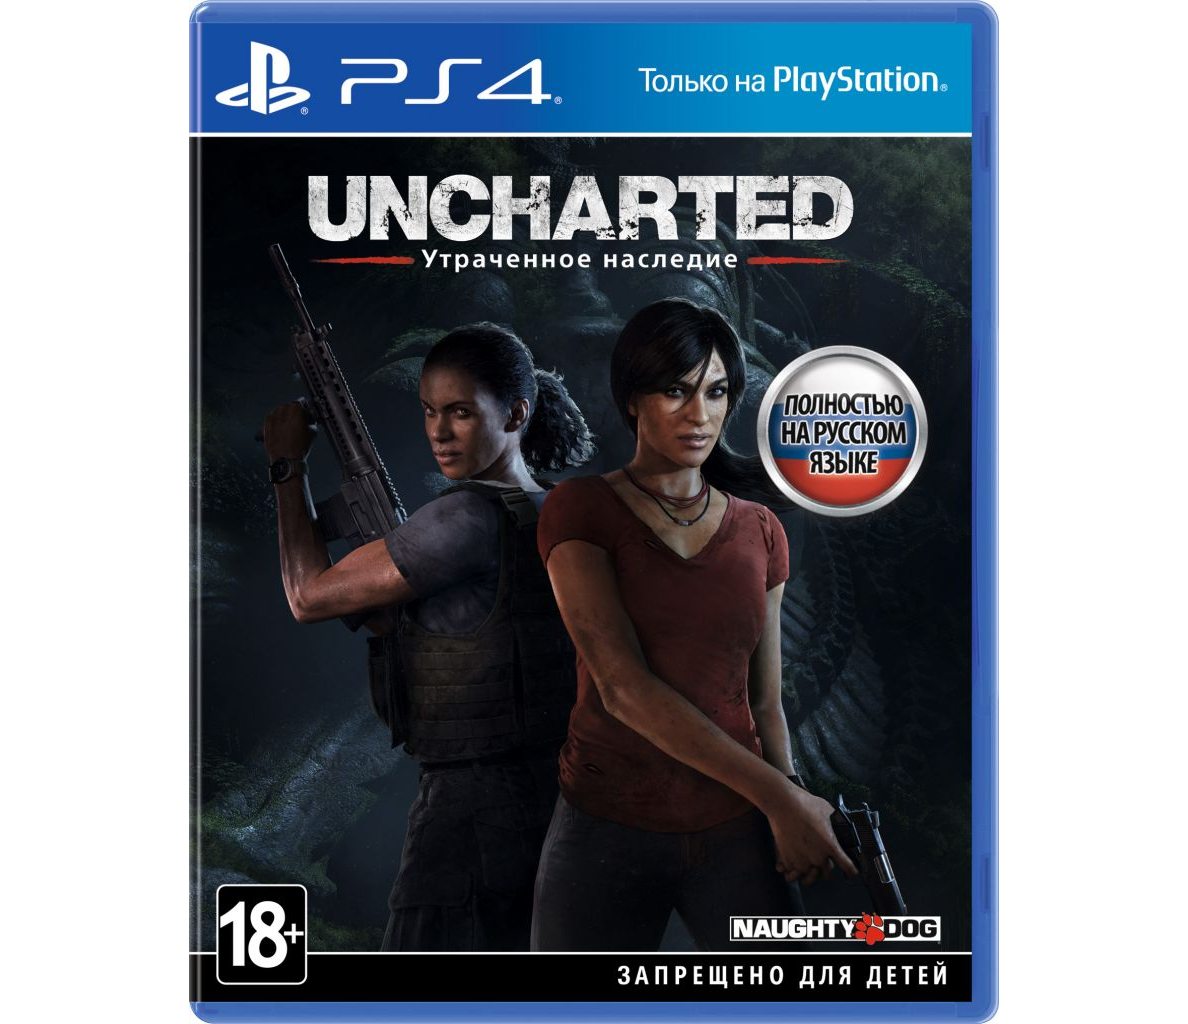 PS 4 Uncharted 4: Утраченное наследие PS 4